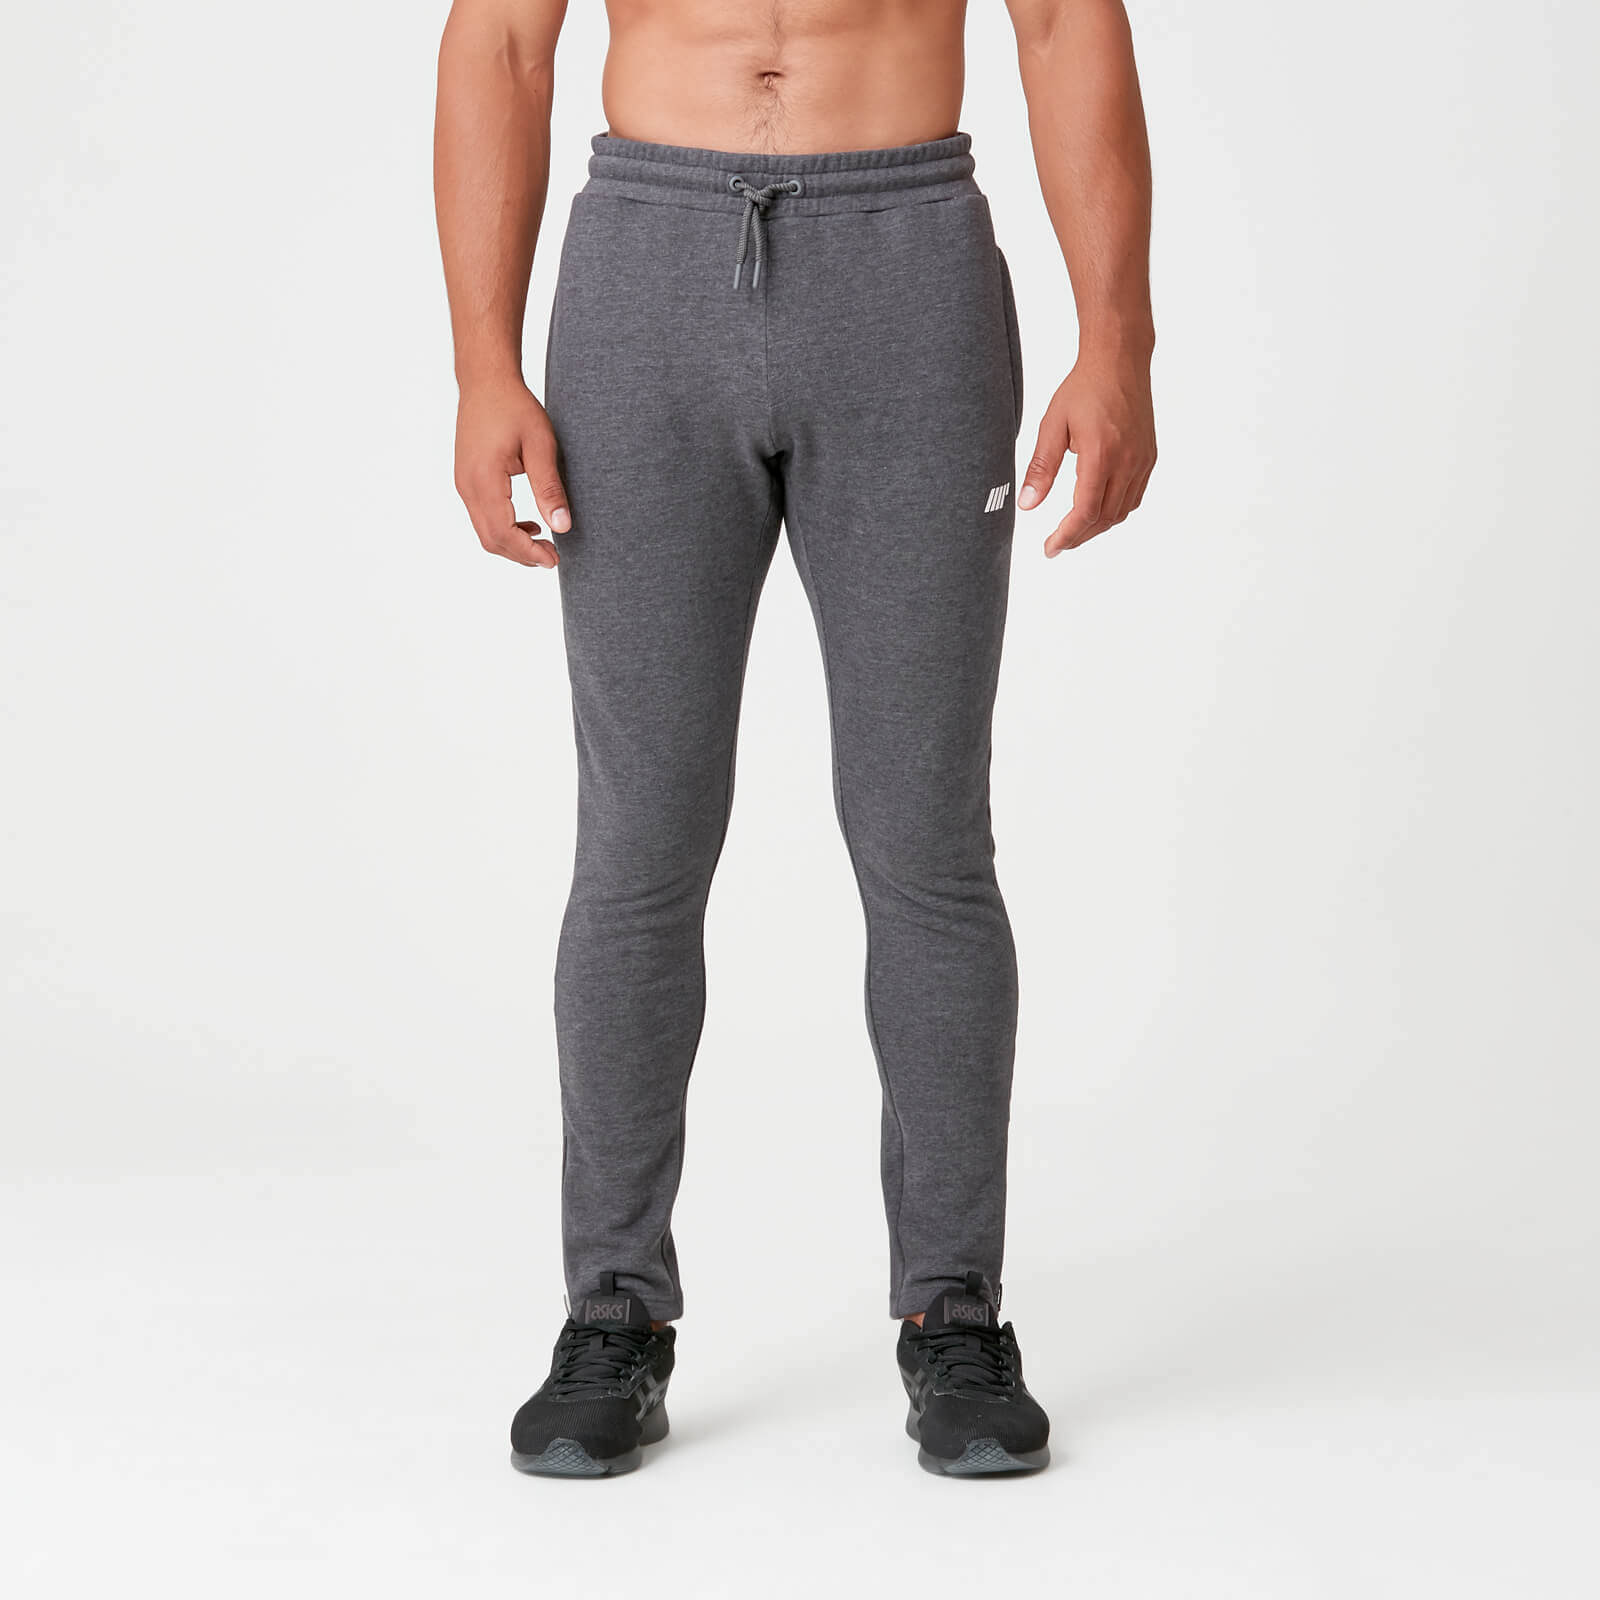 Tru-Fit Slim Fit joggers hlače - Tamno sive